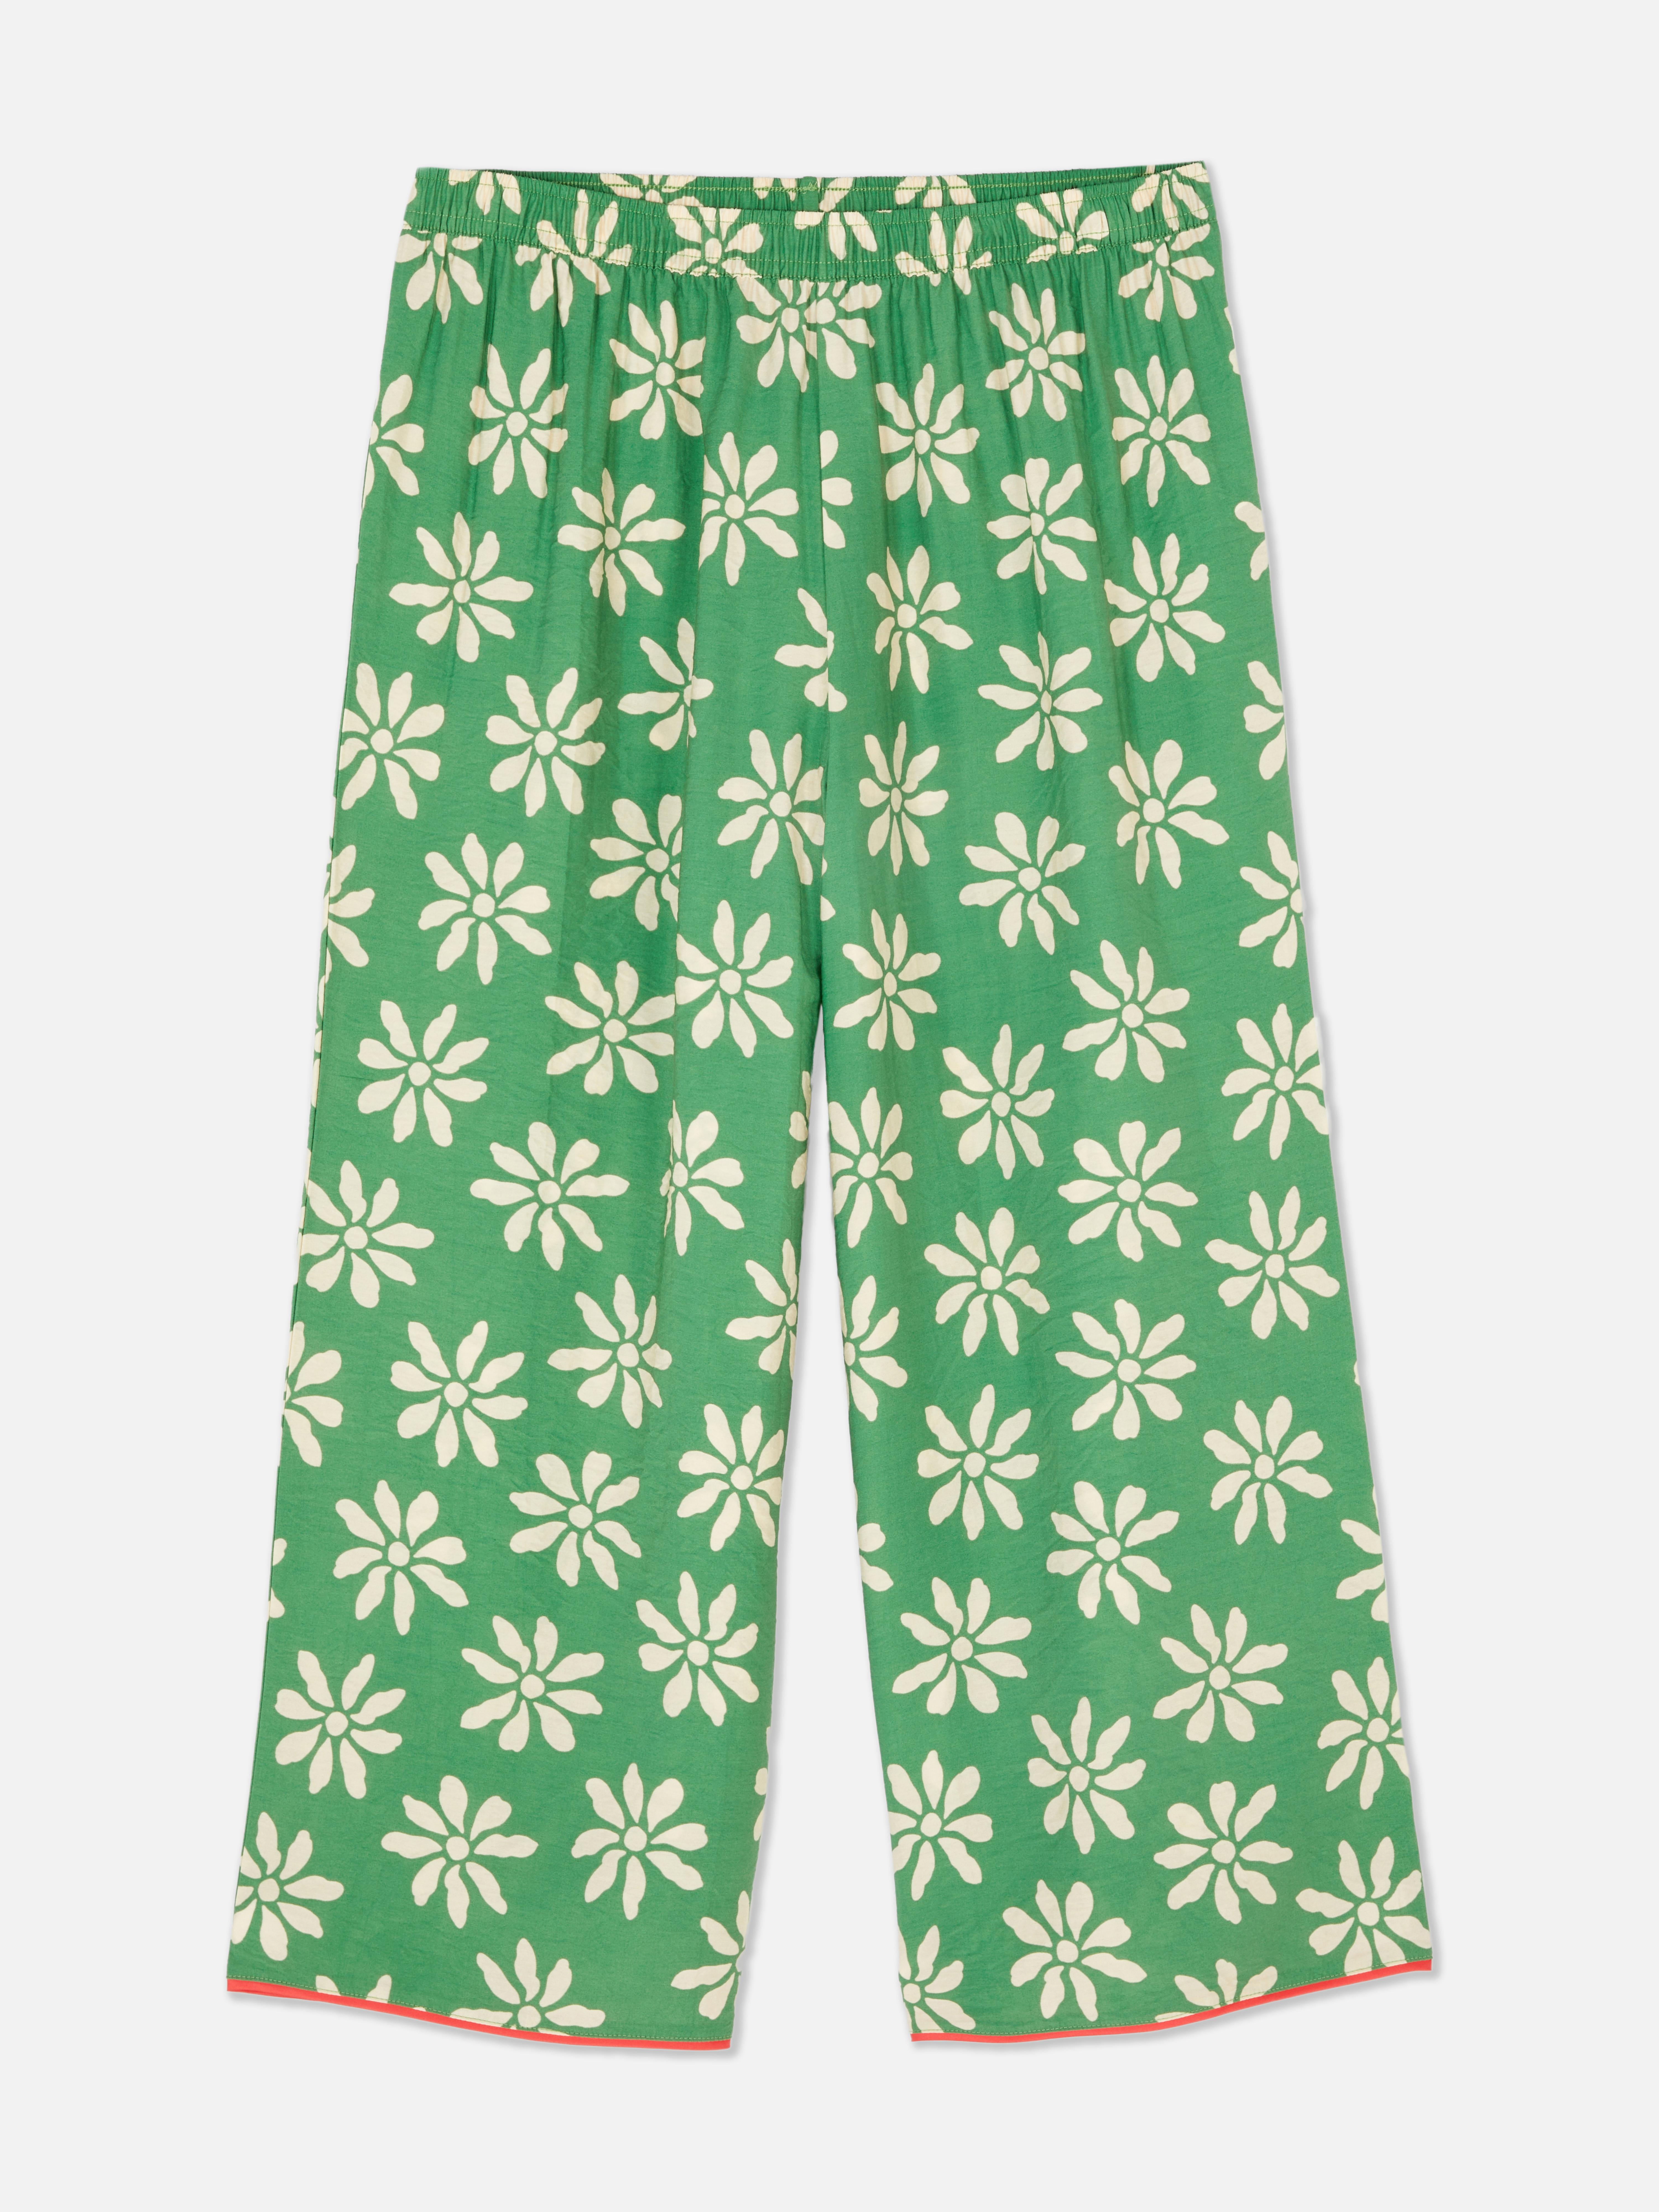 Calças pijama padrão floral debrum contrastante